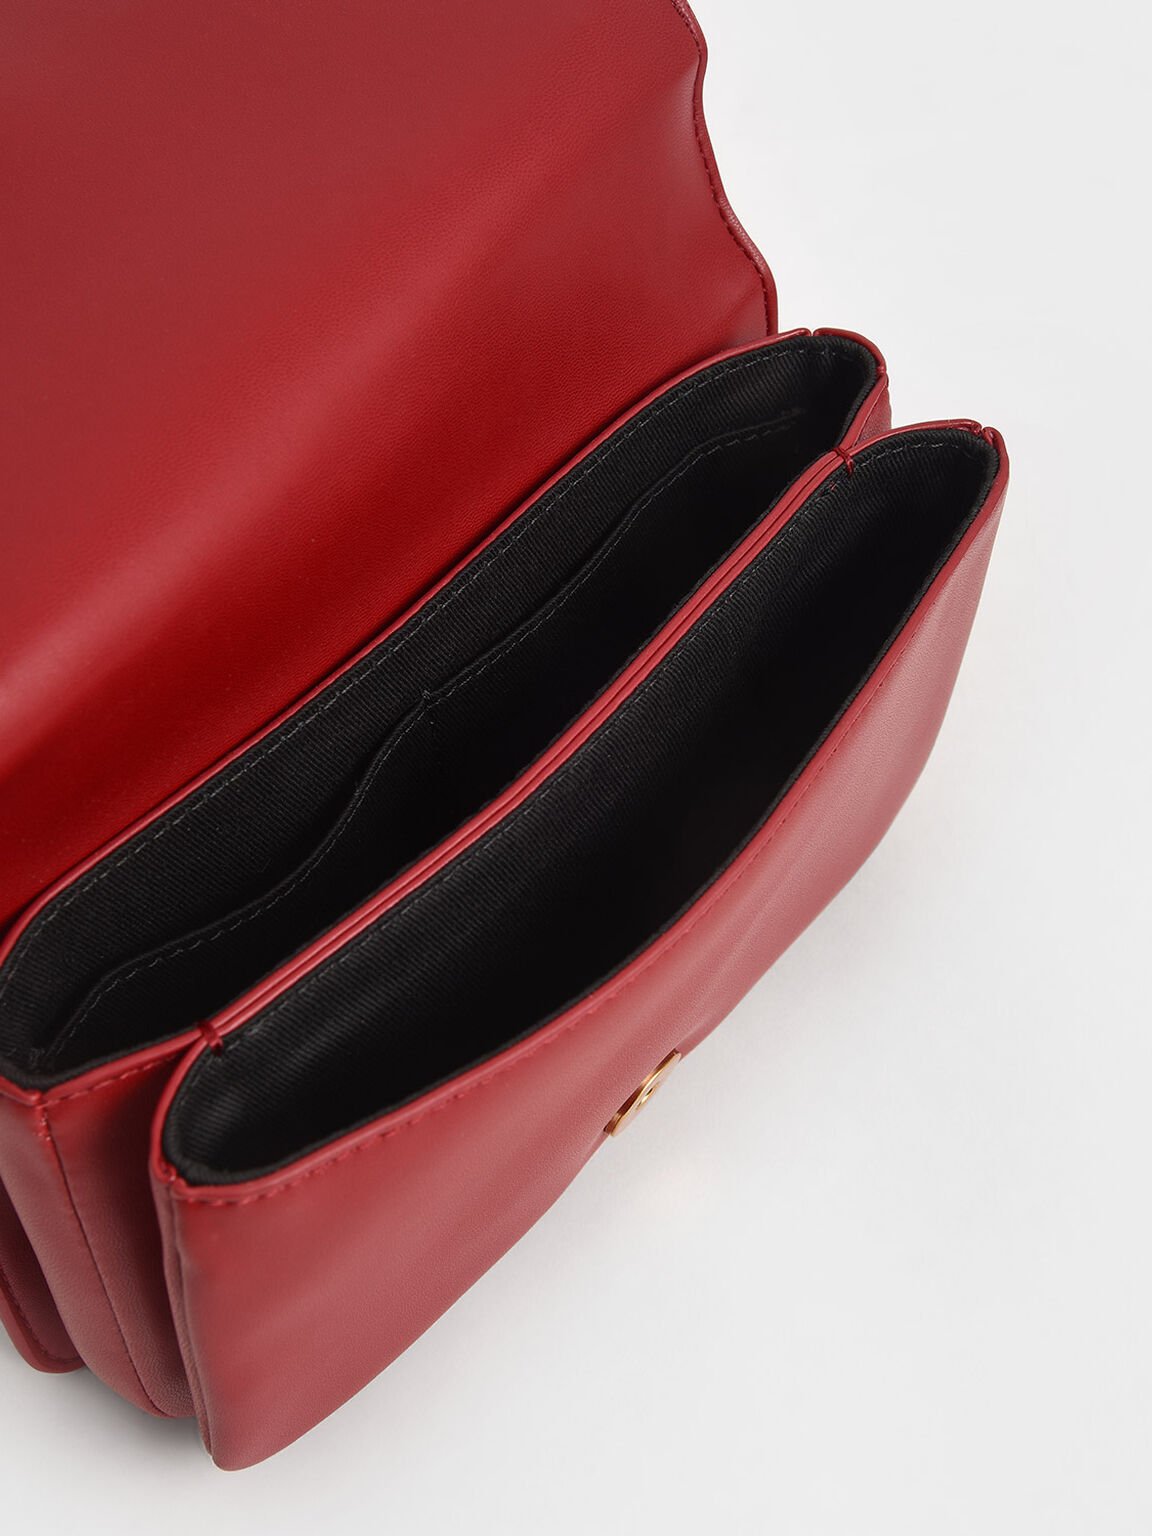 Beaded Handle Crossbody Bag, Red, hi-res